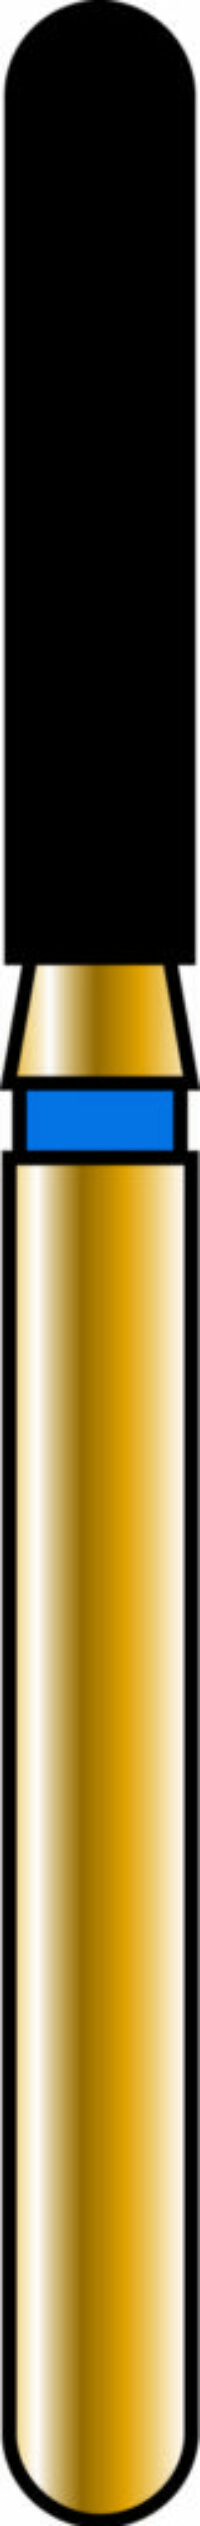 Round End Cylinder 16-8mm Gold Diamond Bur